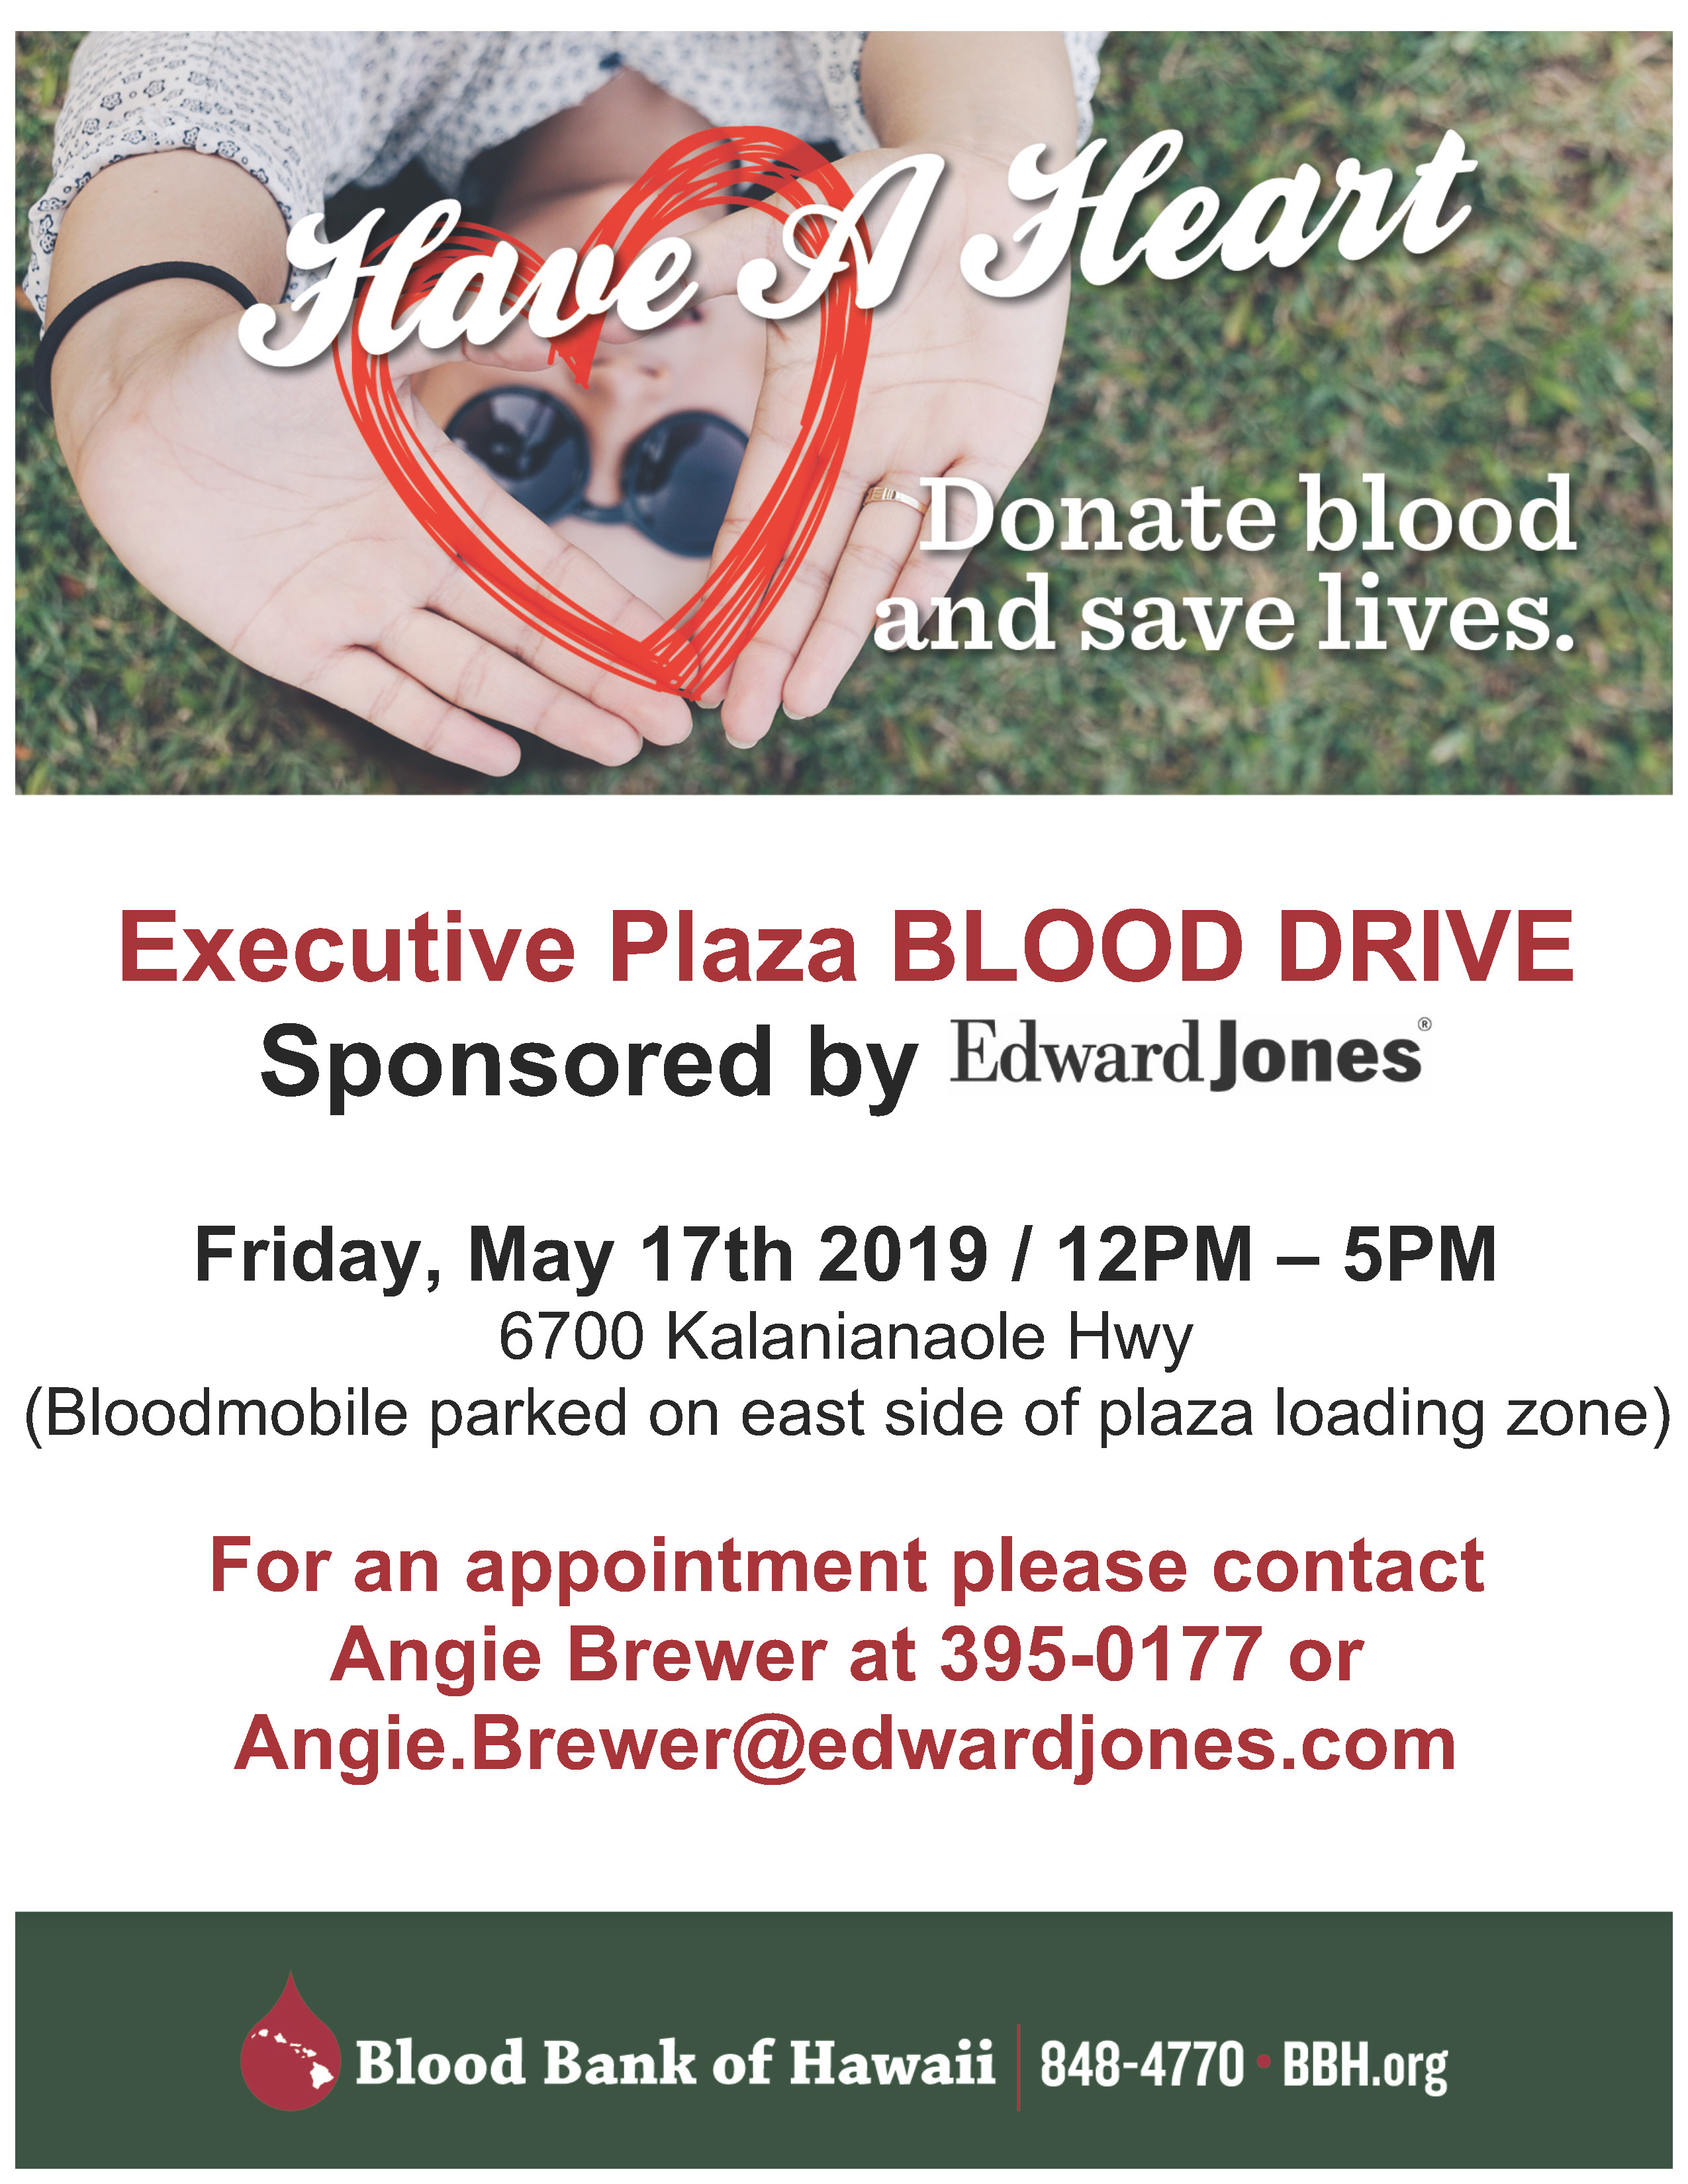 edward jones blood drive flyer